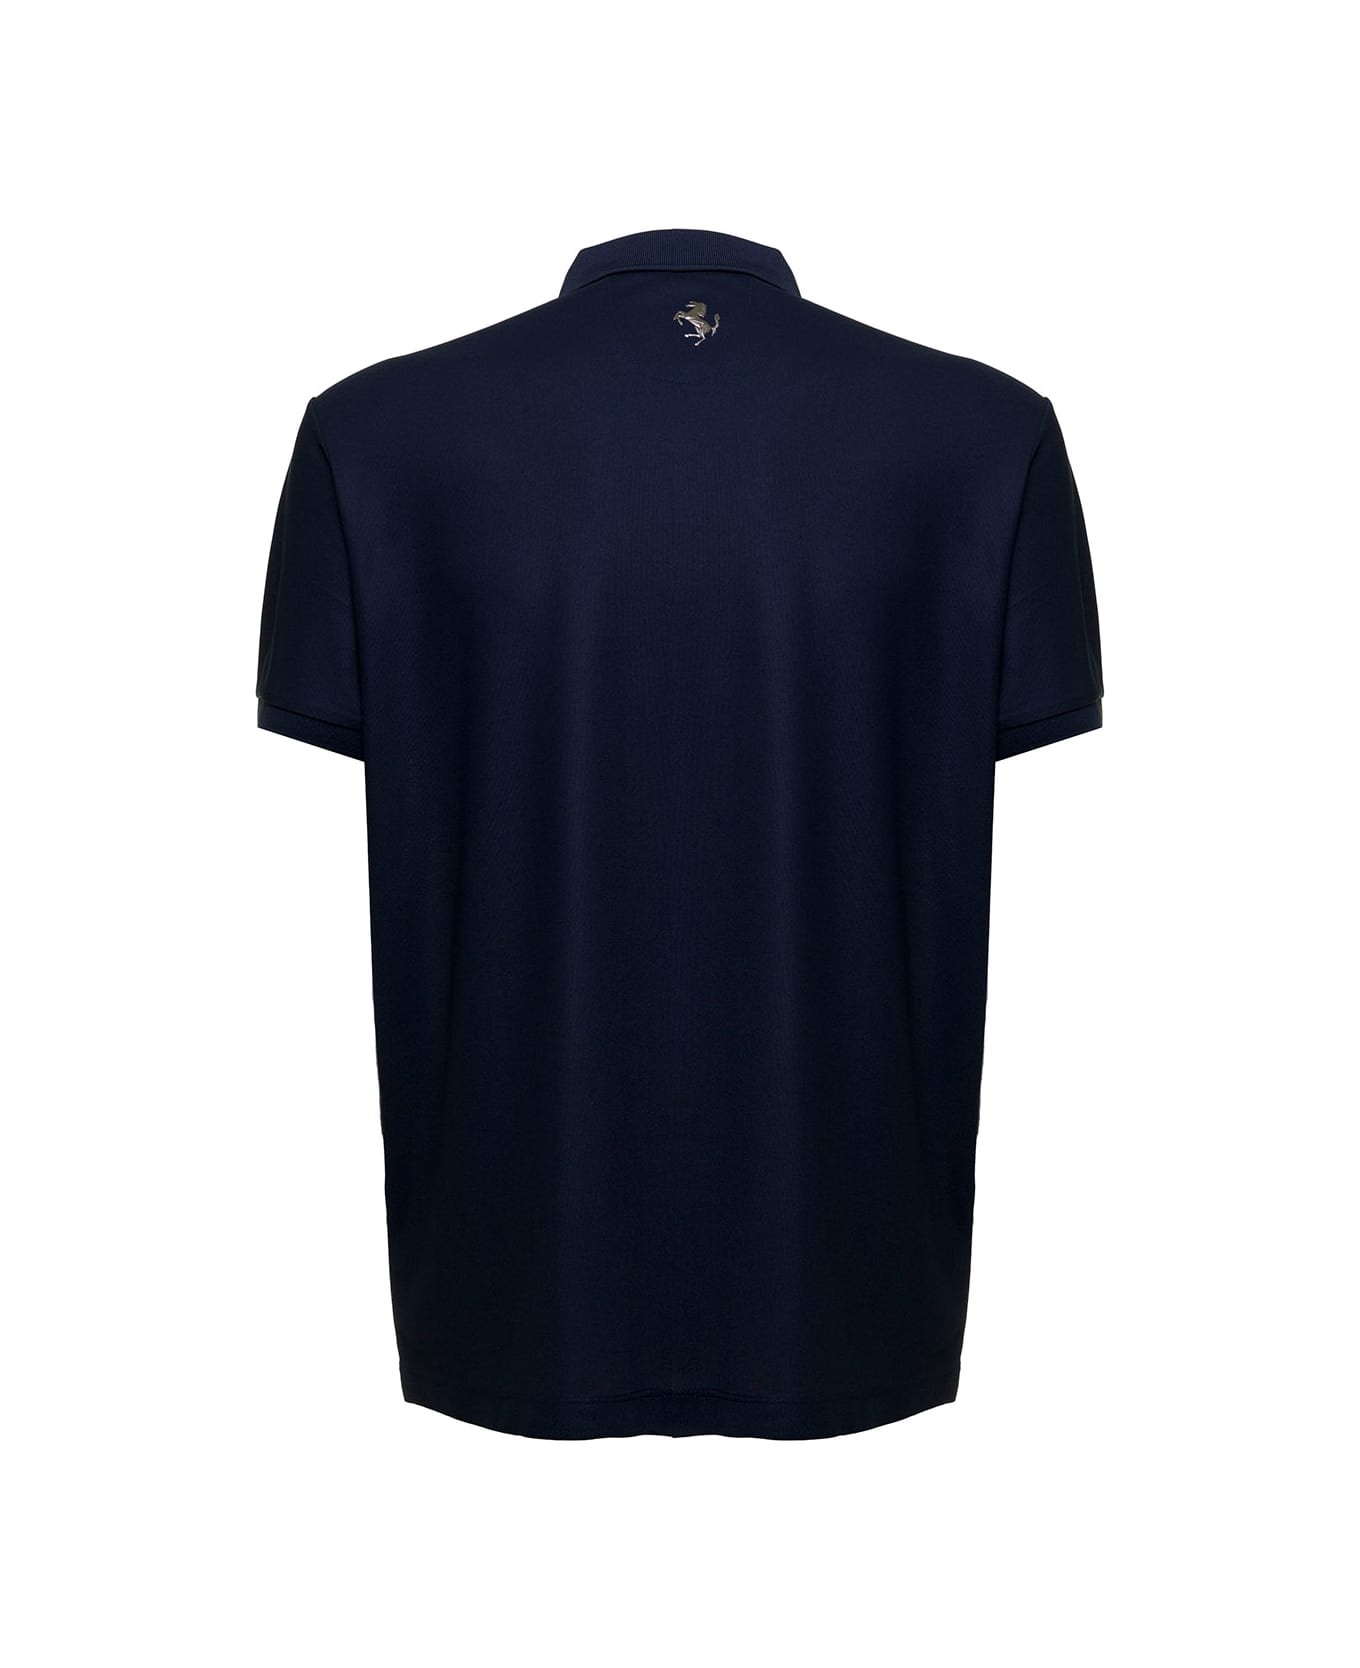 Ferrari Man's Blue Piquet Fabric Polo Shirt With Logo